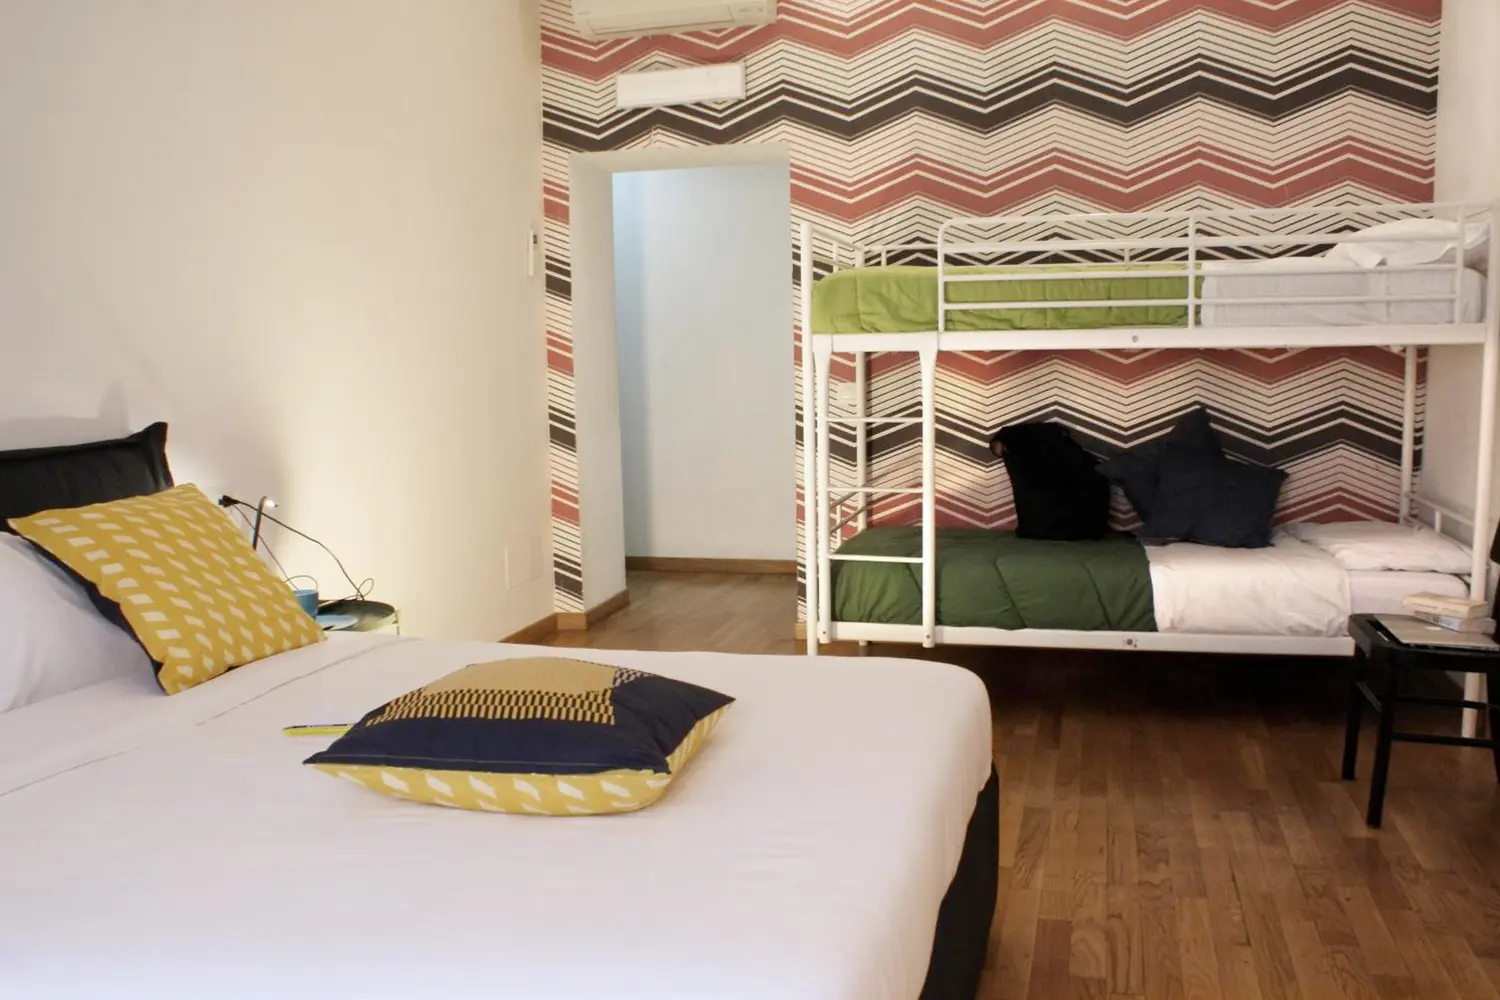 Dorm room at the La Controra Hostel in Rome